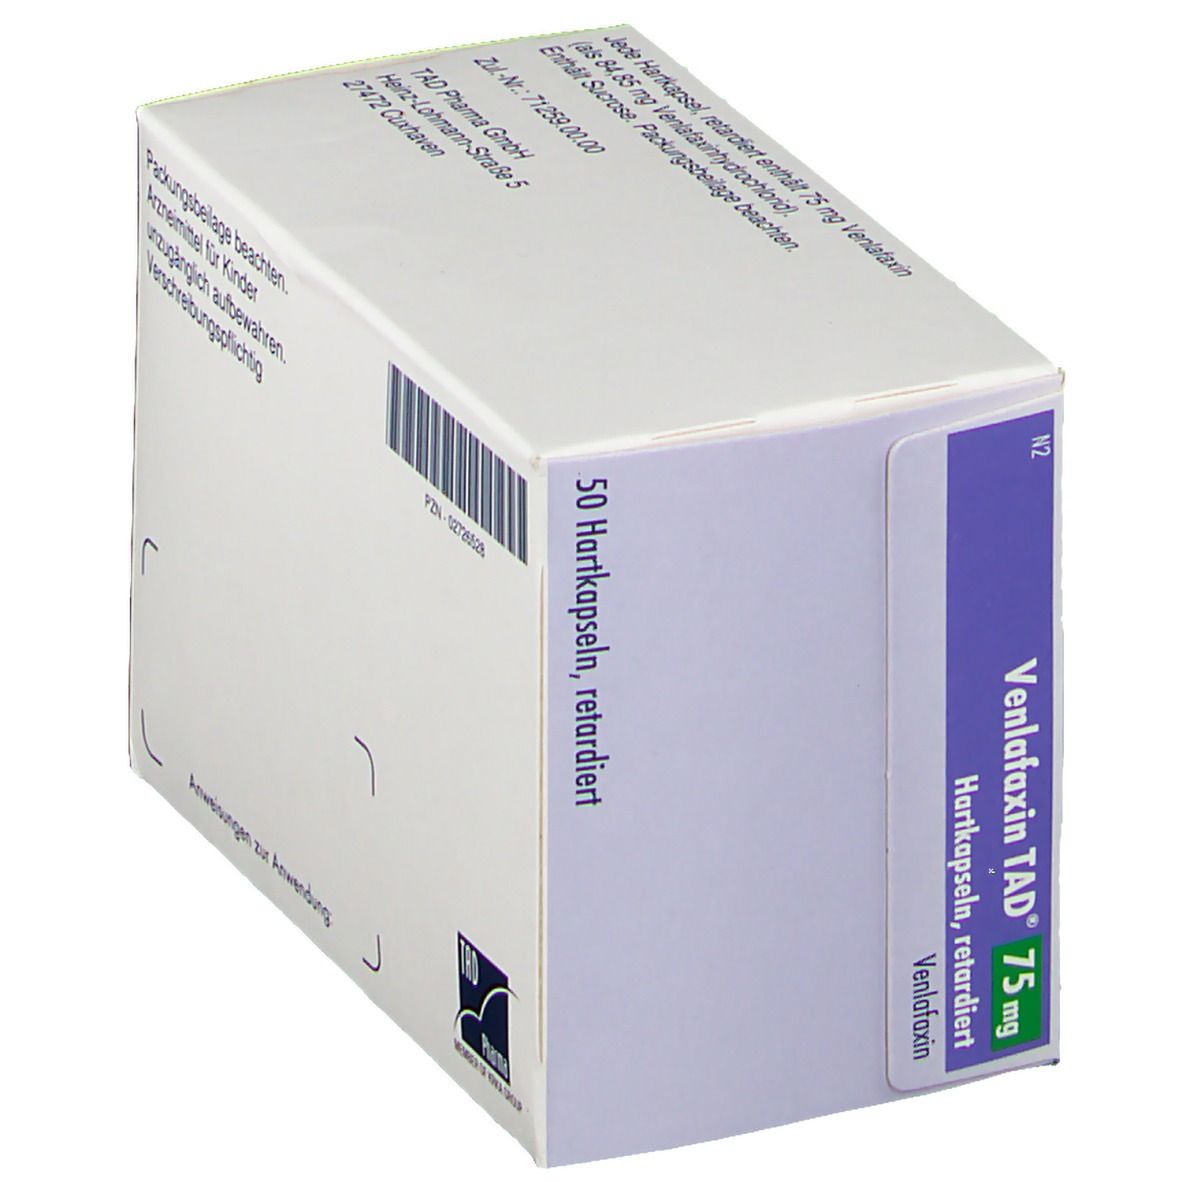 Venlafaxin TAD® 75 mg